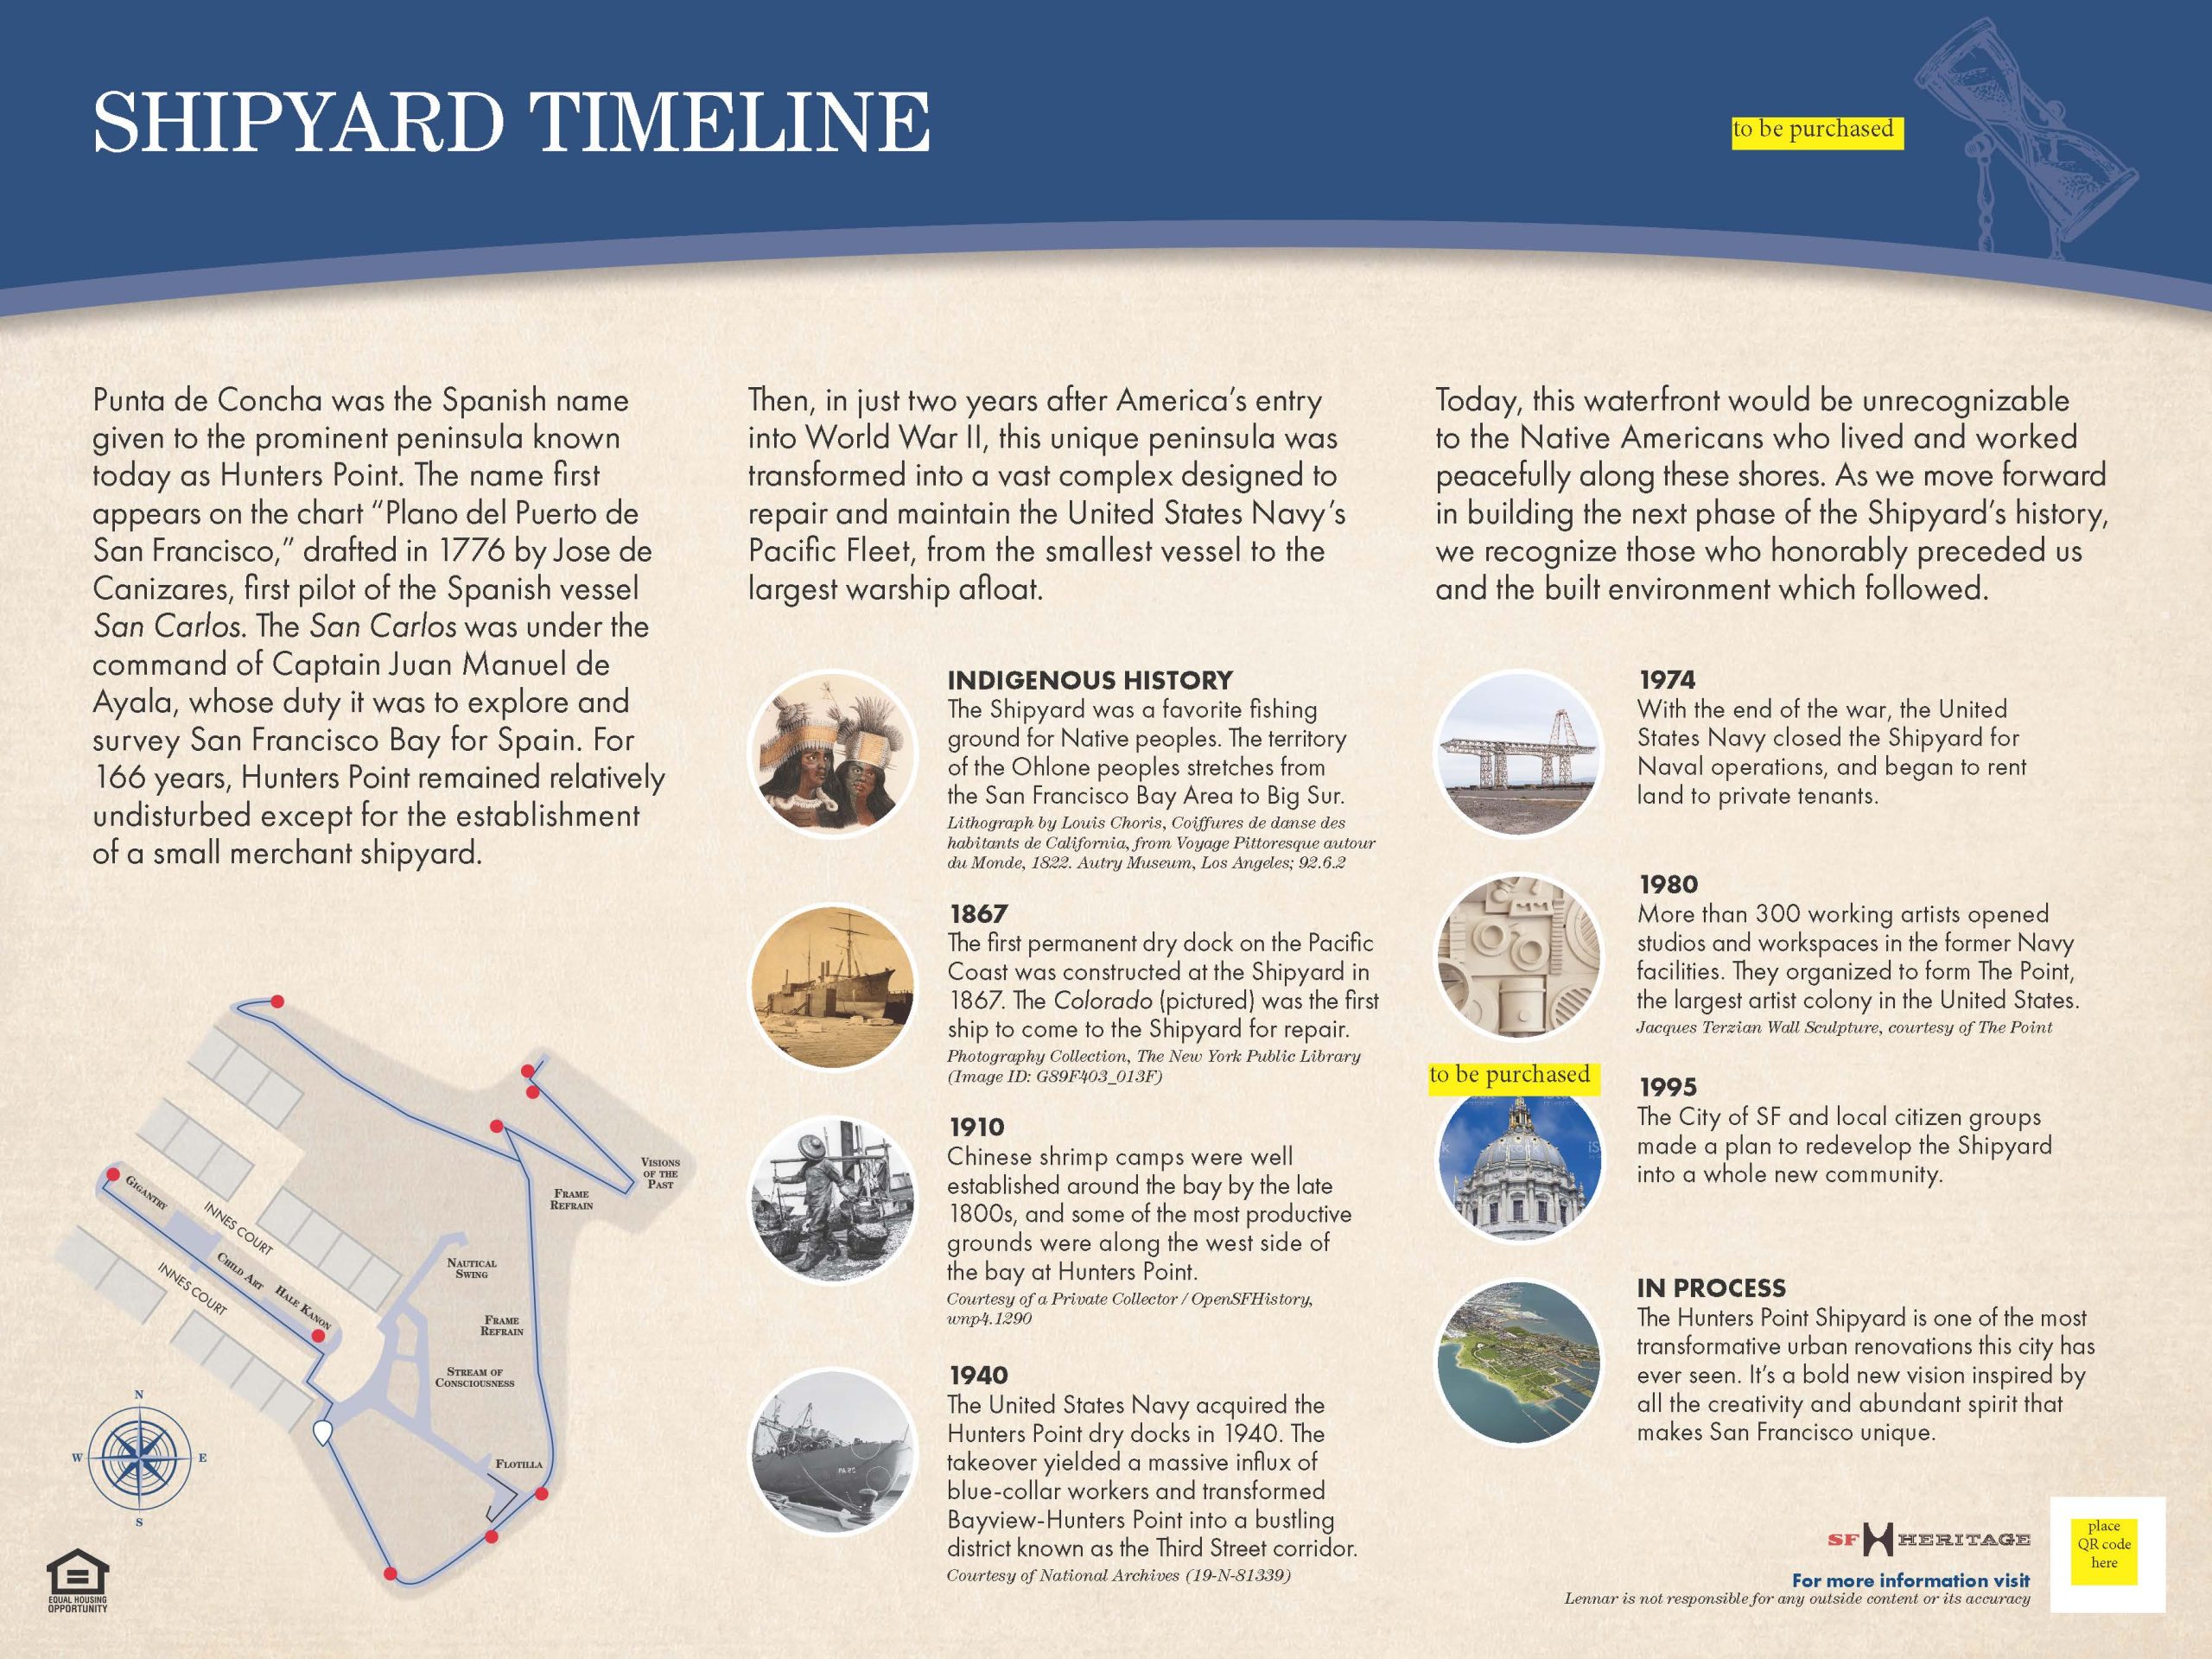 36. shipyard timeline image